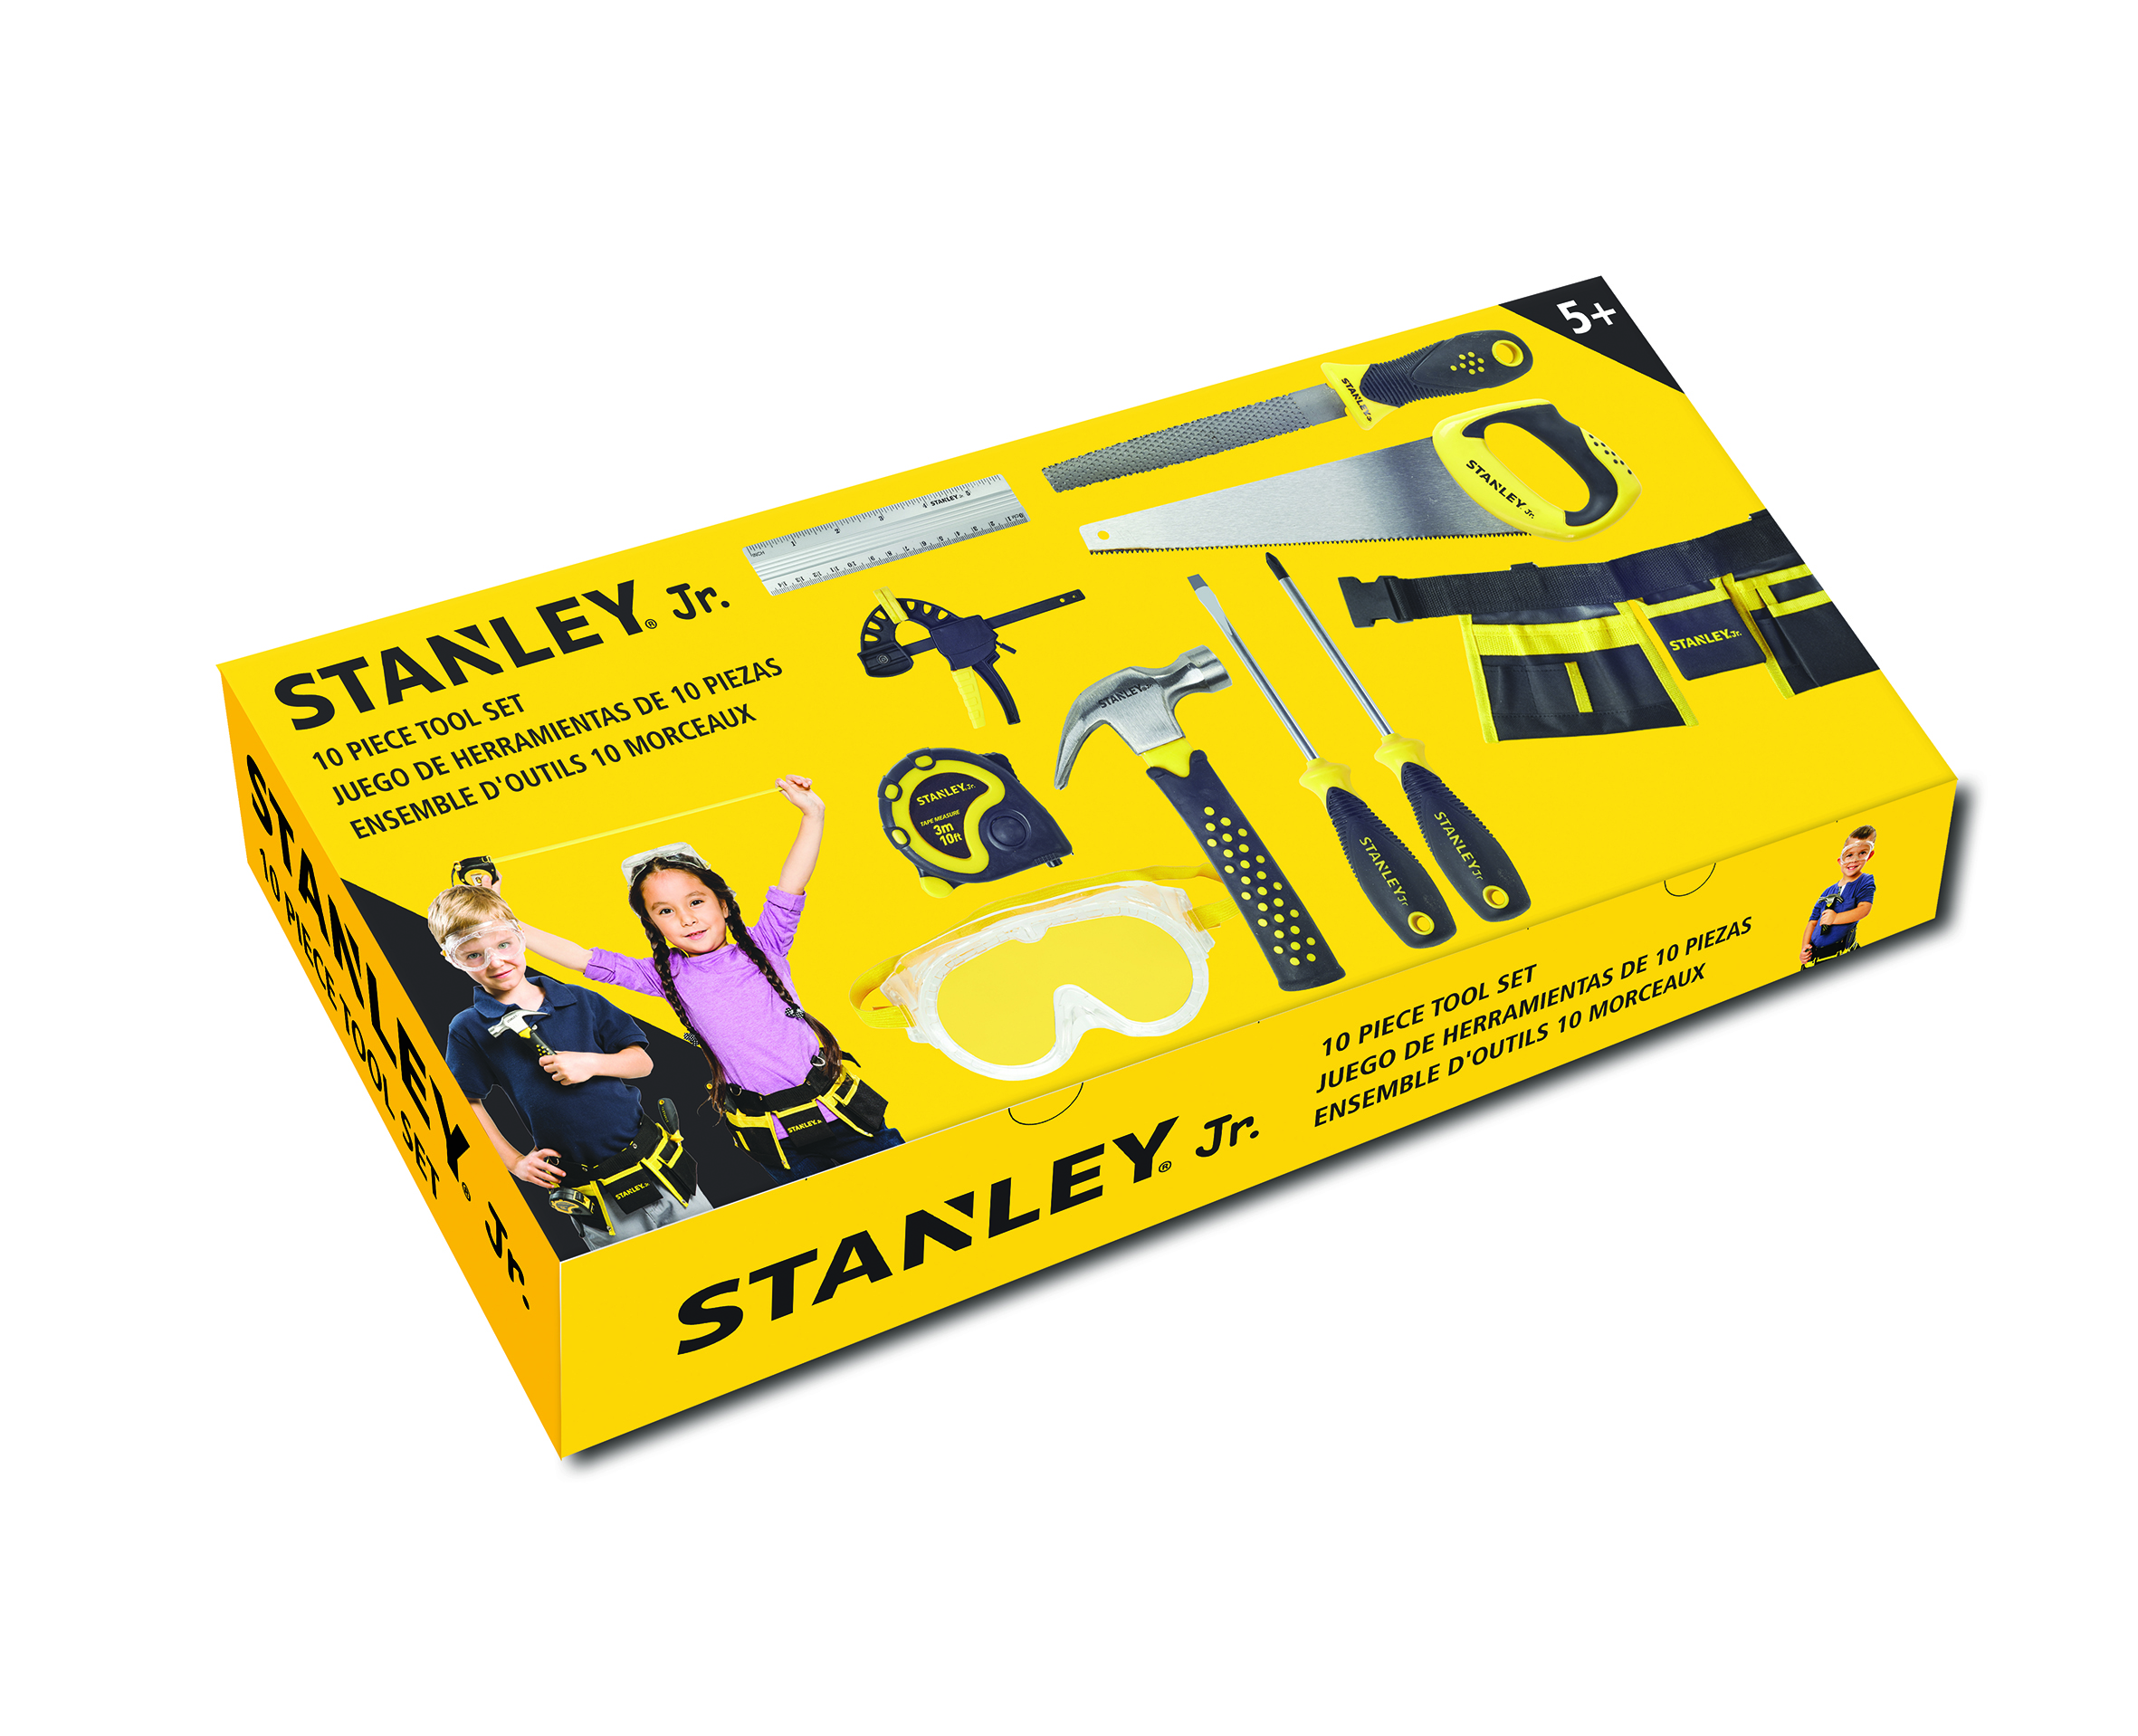 Stanley Jr. 3 Piece Garden Toolset - Black, Yellow